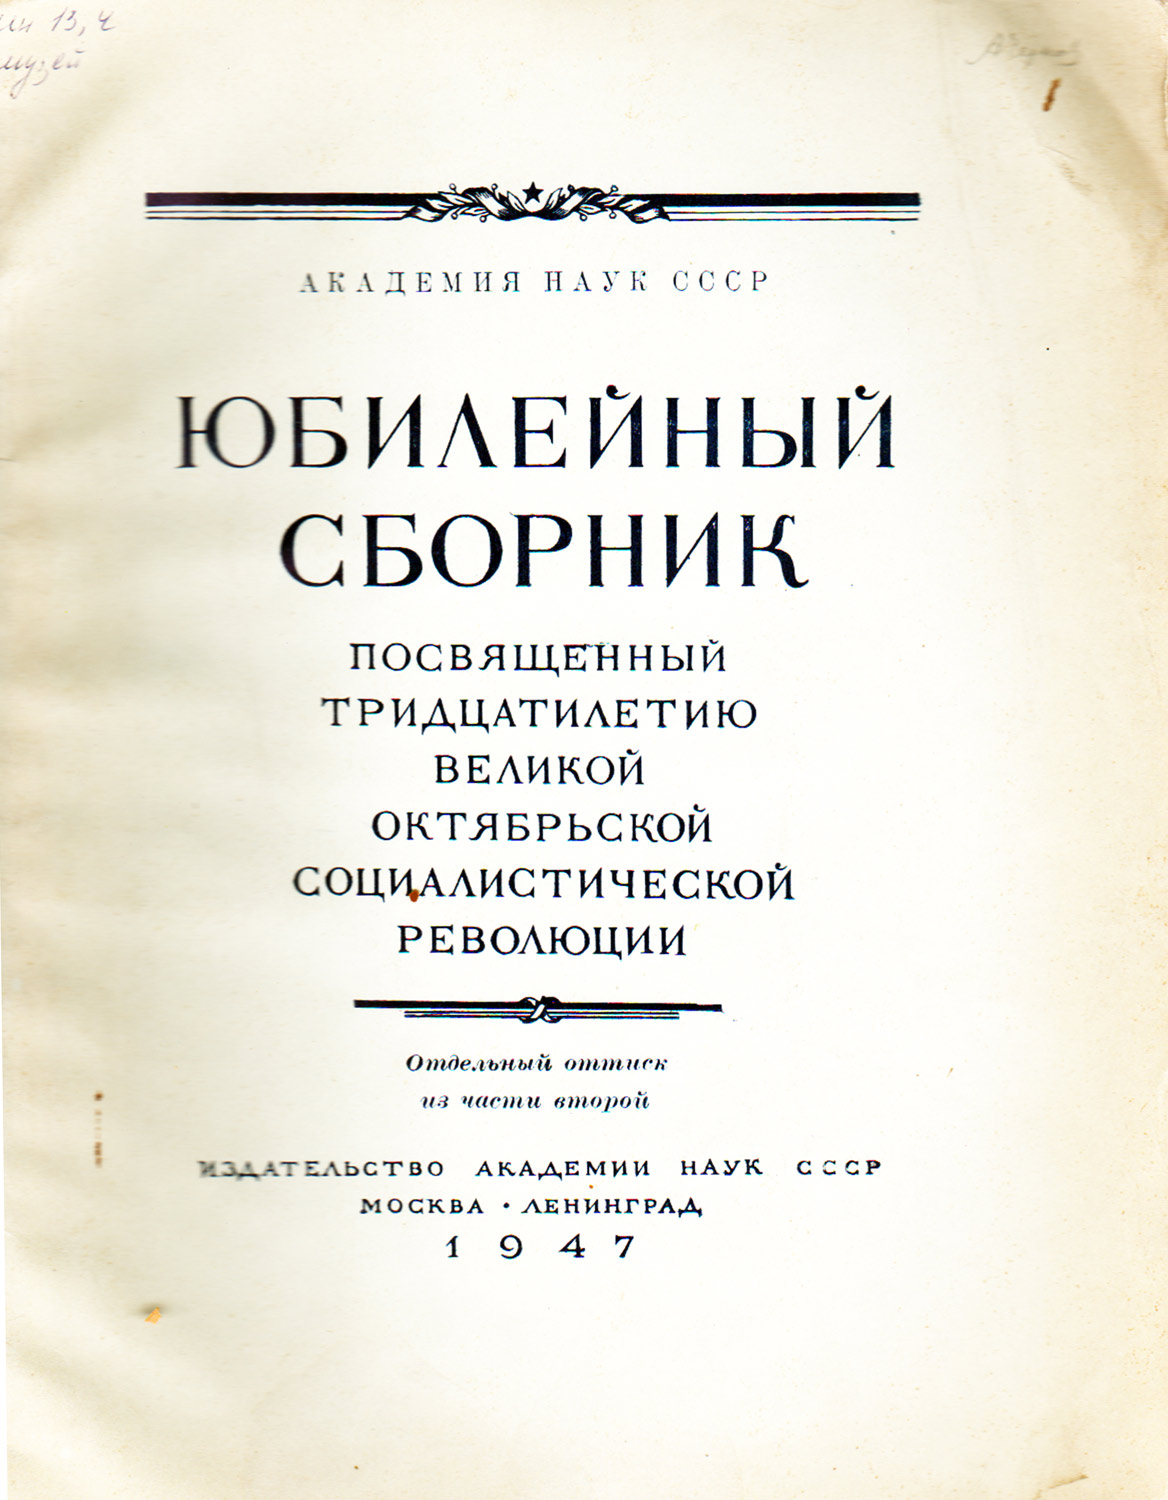 1947 г. Чернов А. А. Палеонтологические работы А. П. Карпинского